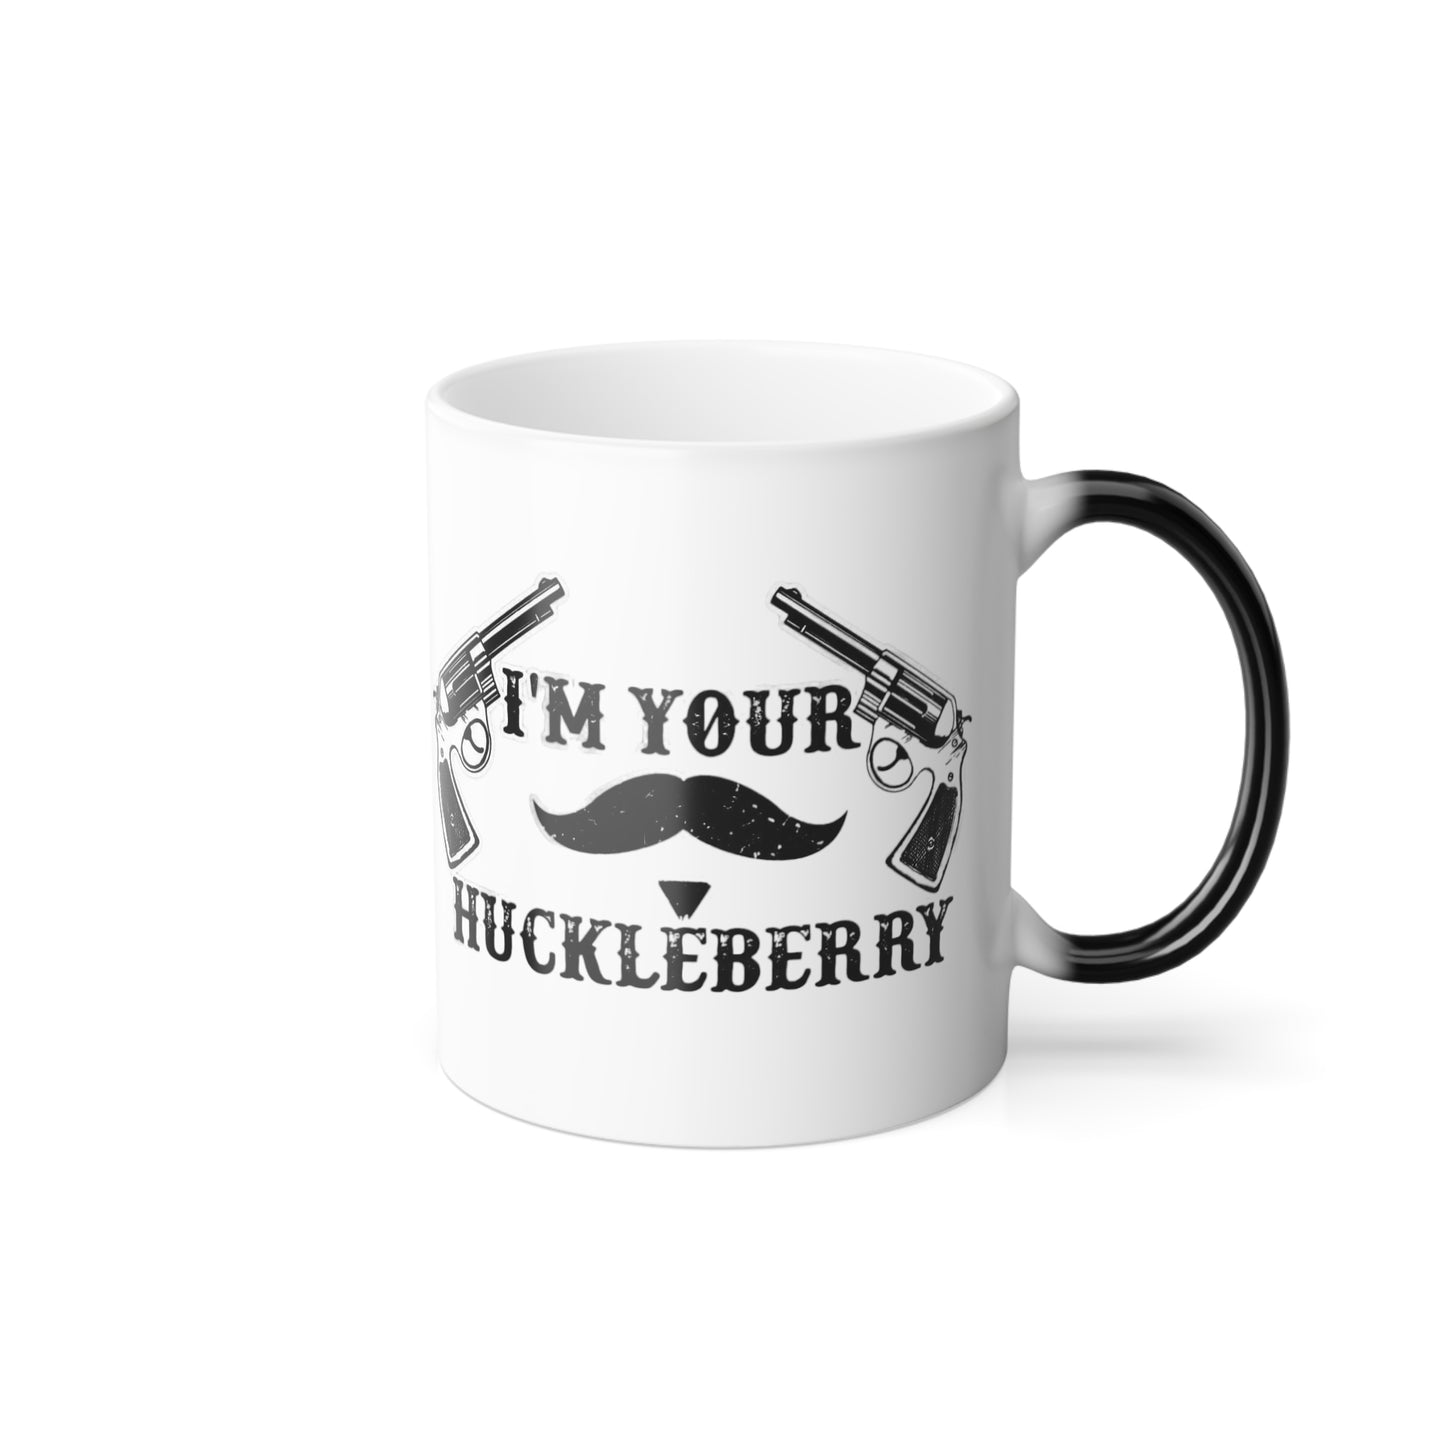 Huckleberry Mug, 11oz